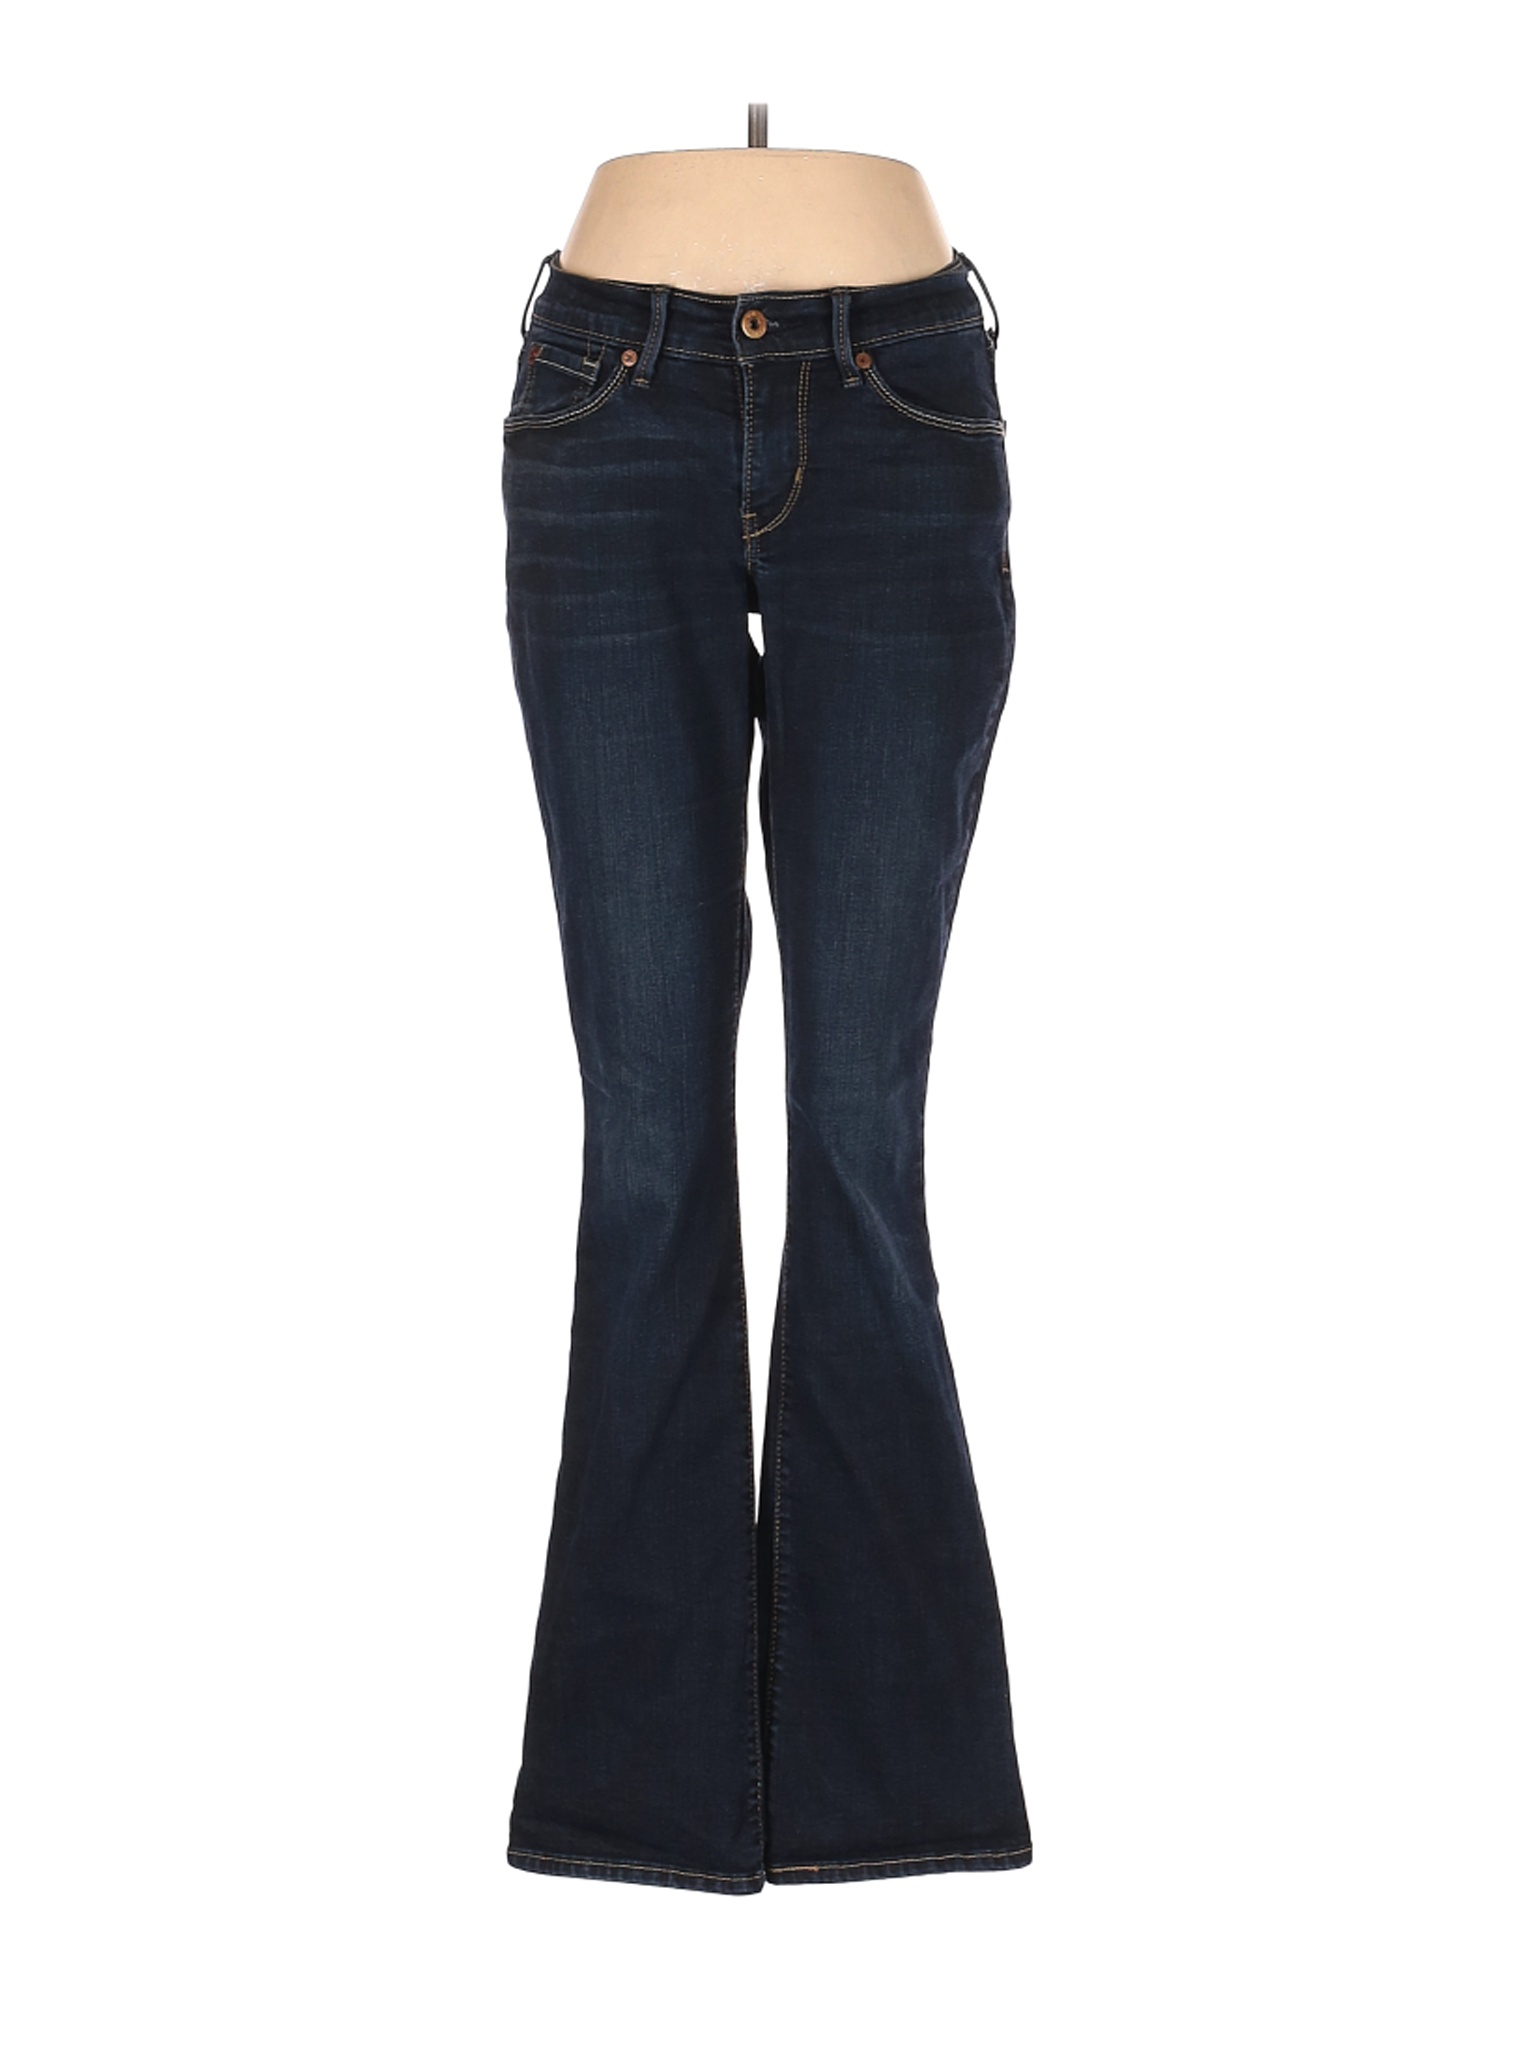 Denizen from Levi's Women Blue Jeans 27W | eBay